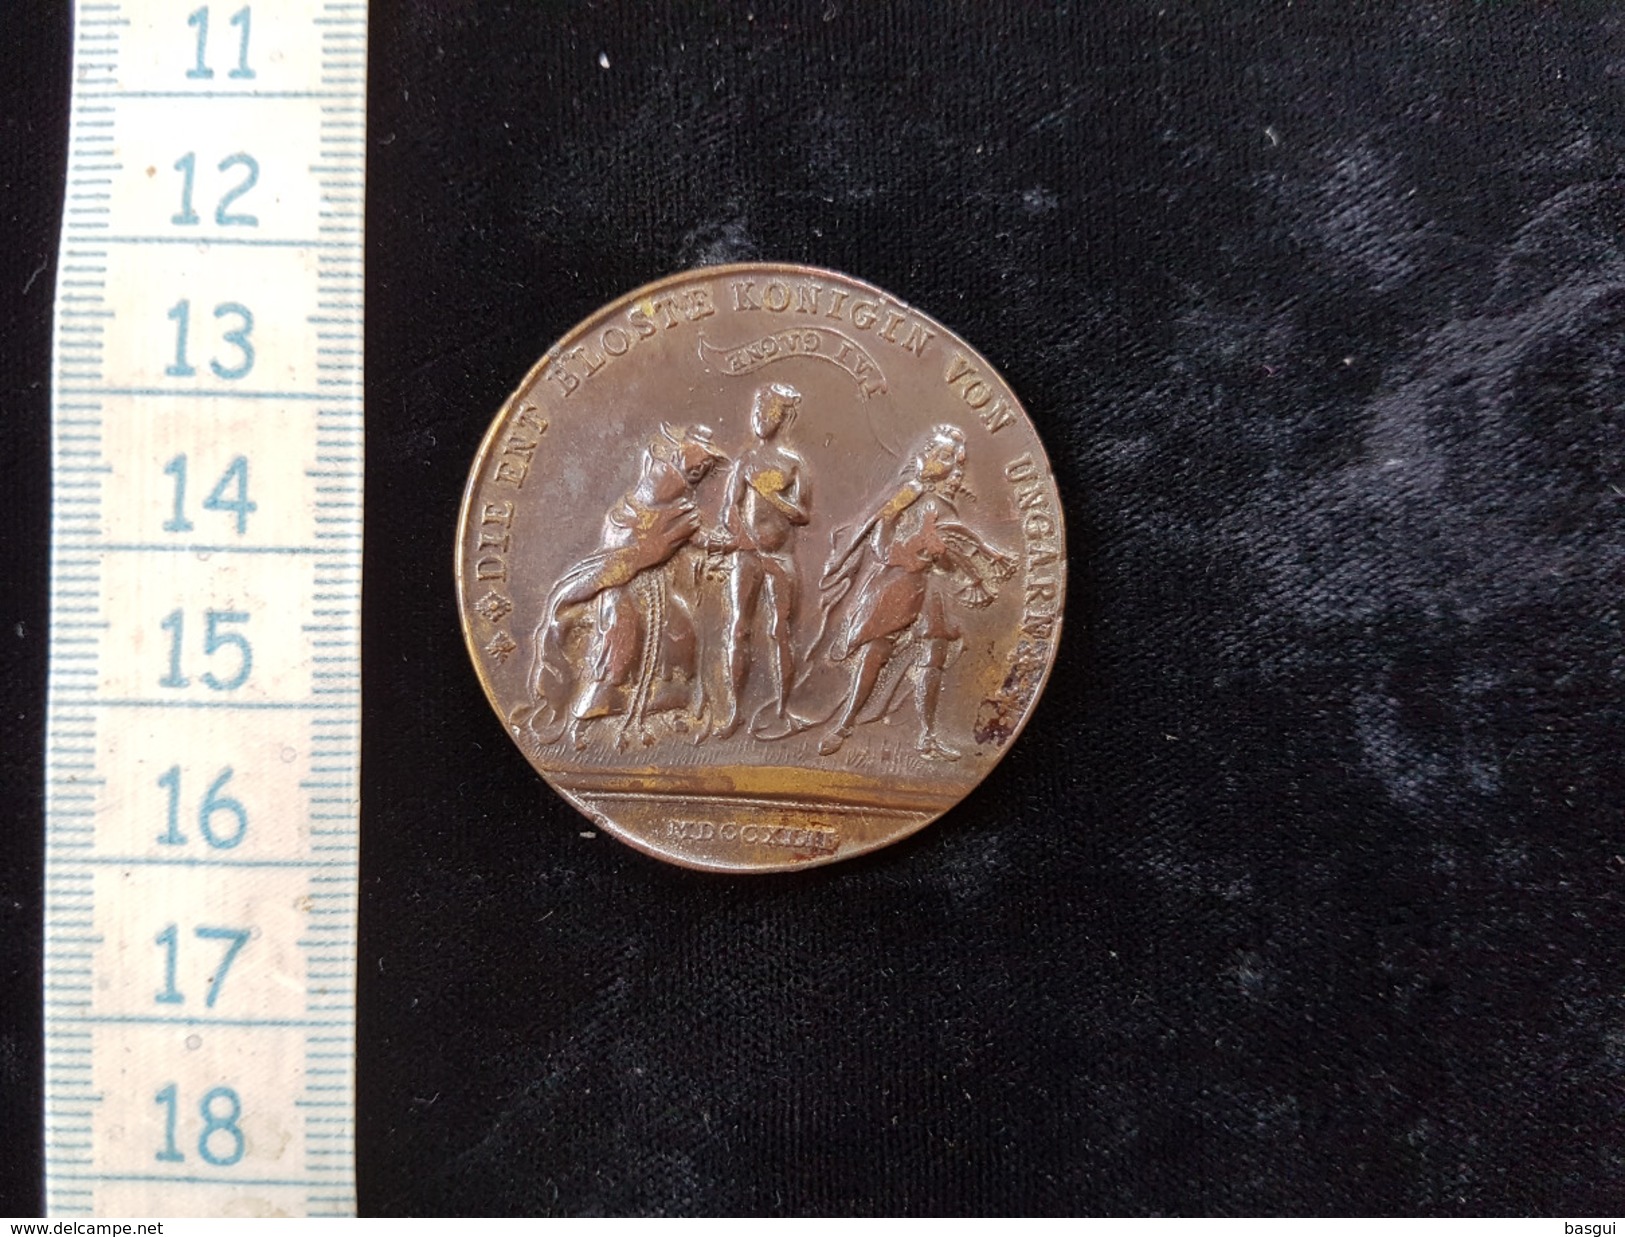 ROYAUME DE BOHÈME - MARIE-THÉRÈSE Médaille Satyrique - Humiliation De Marie-Thérèse Par Frédéric II,  1764 - Royaux / De Noblesse